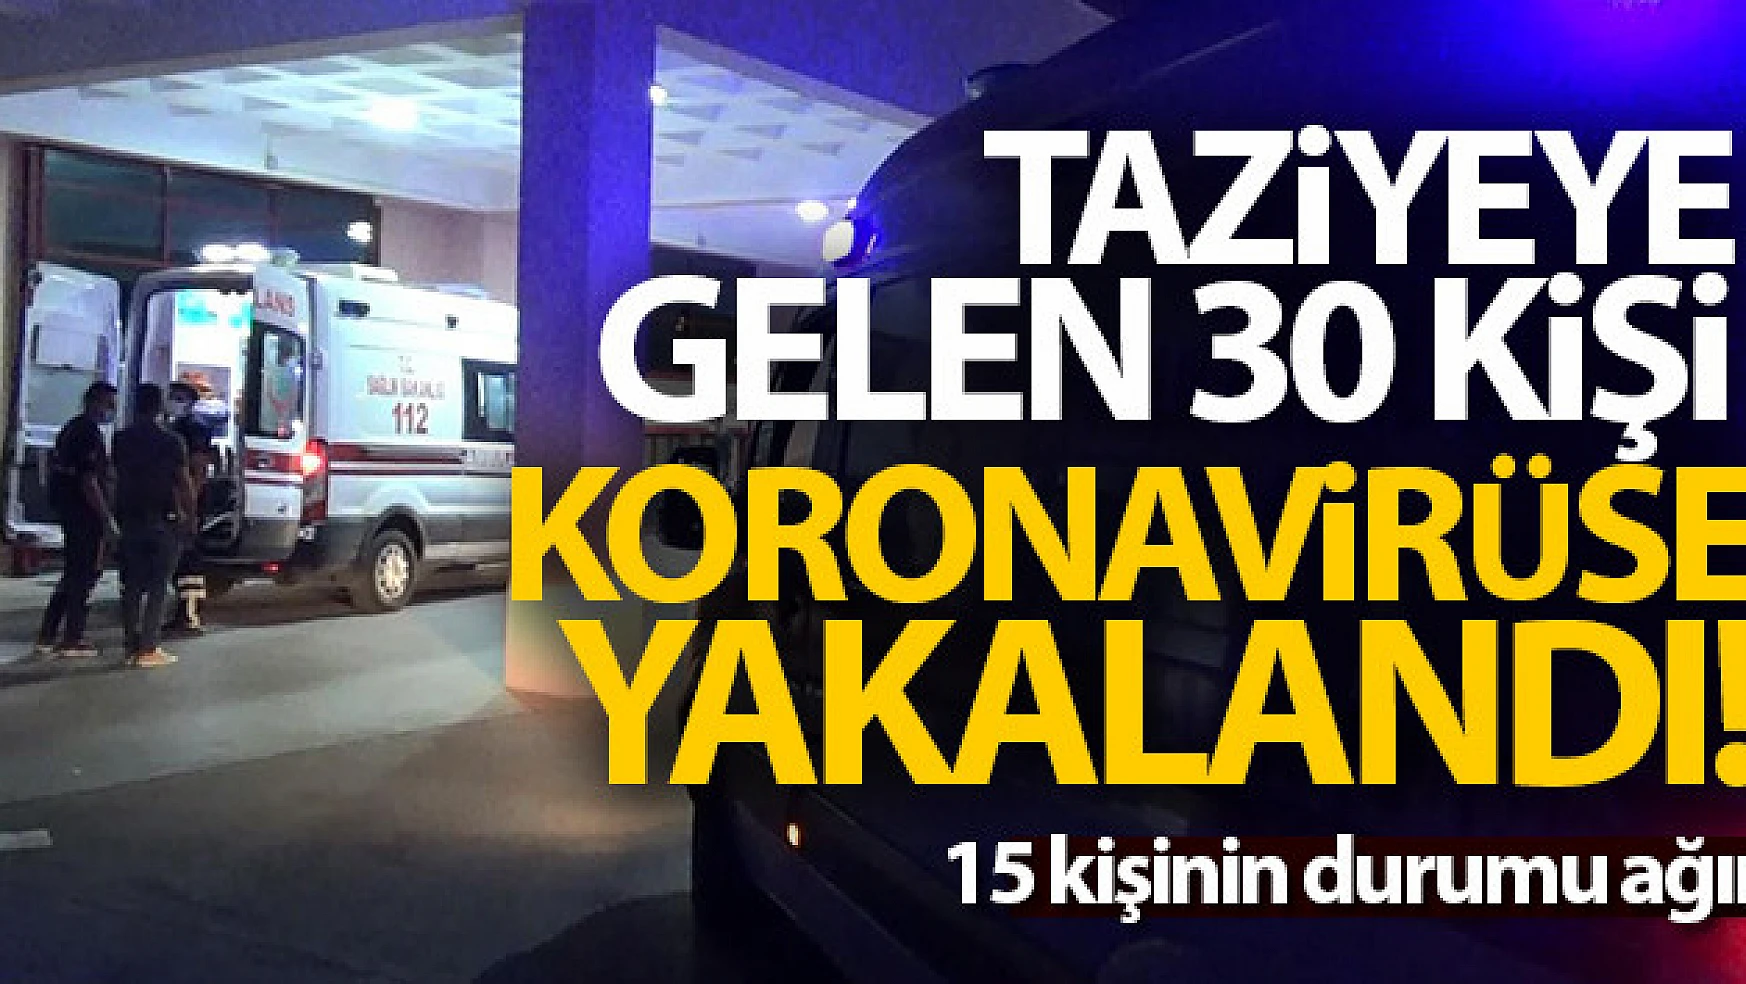 Diyarbakır'da camide kurulan taziyede korona cirit attı, 30 kişi virüse yakalandı